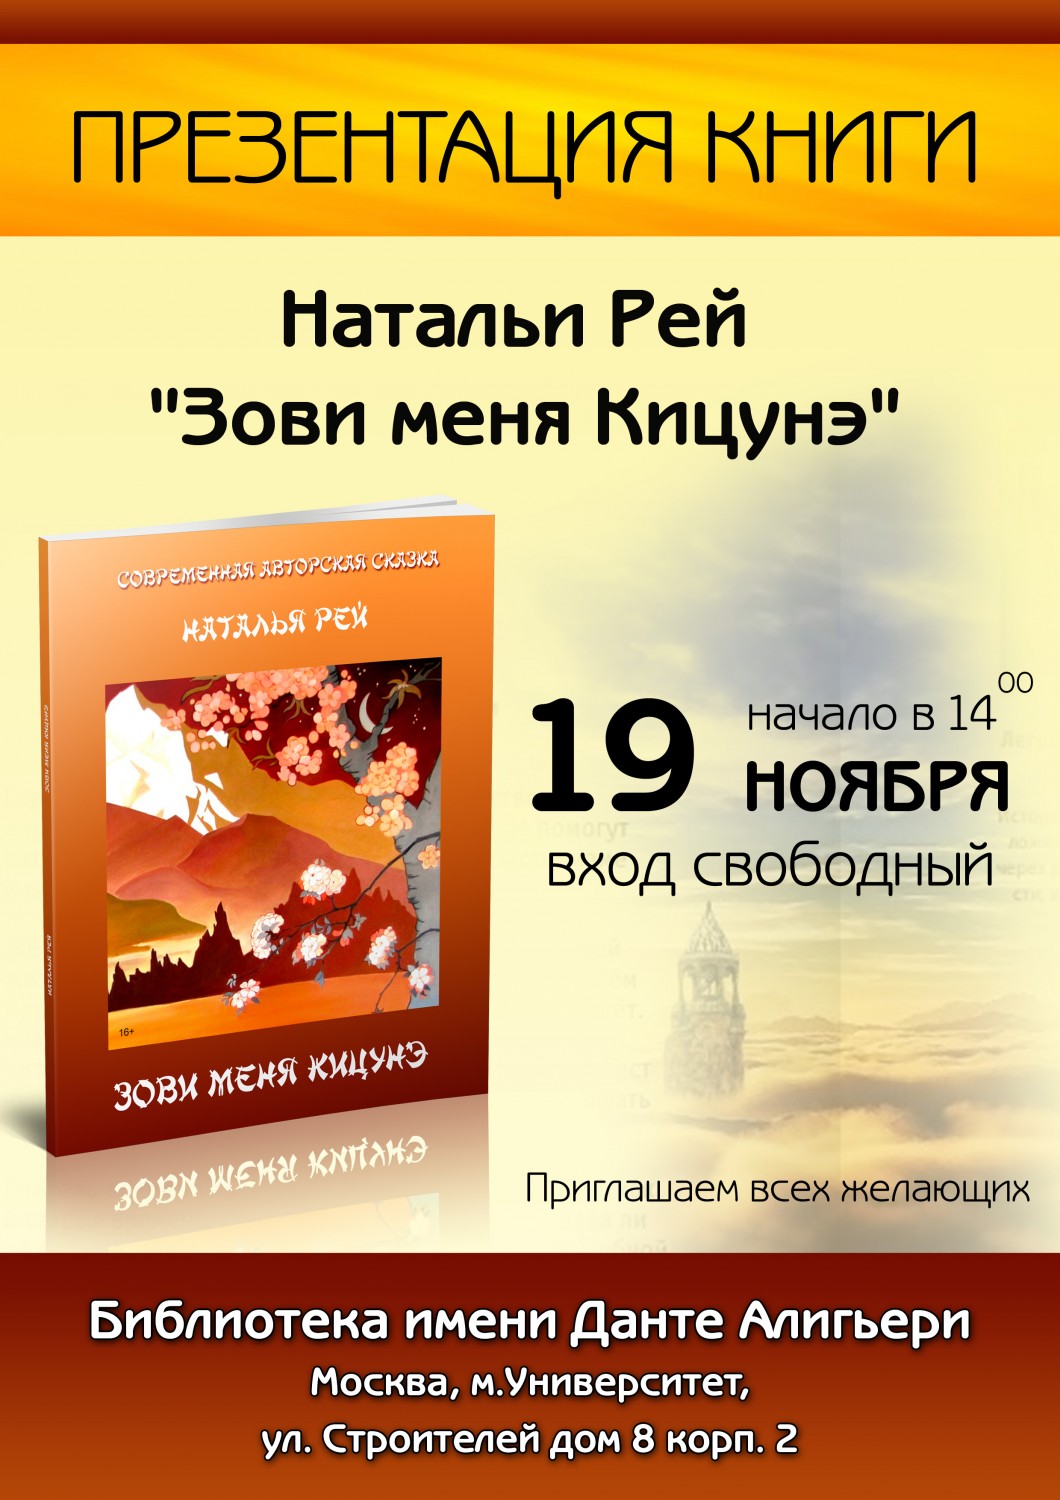 19 ноября в Москве пройдет презентация книги 